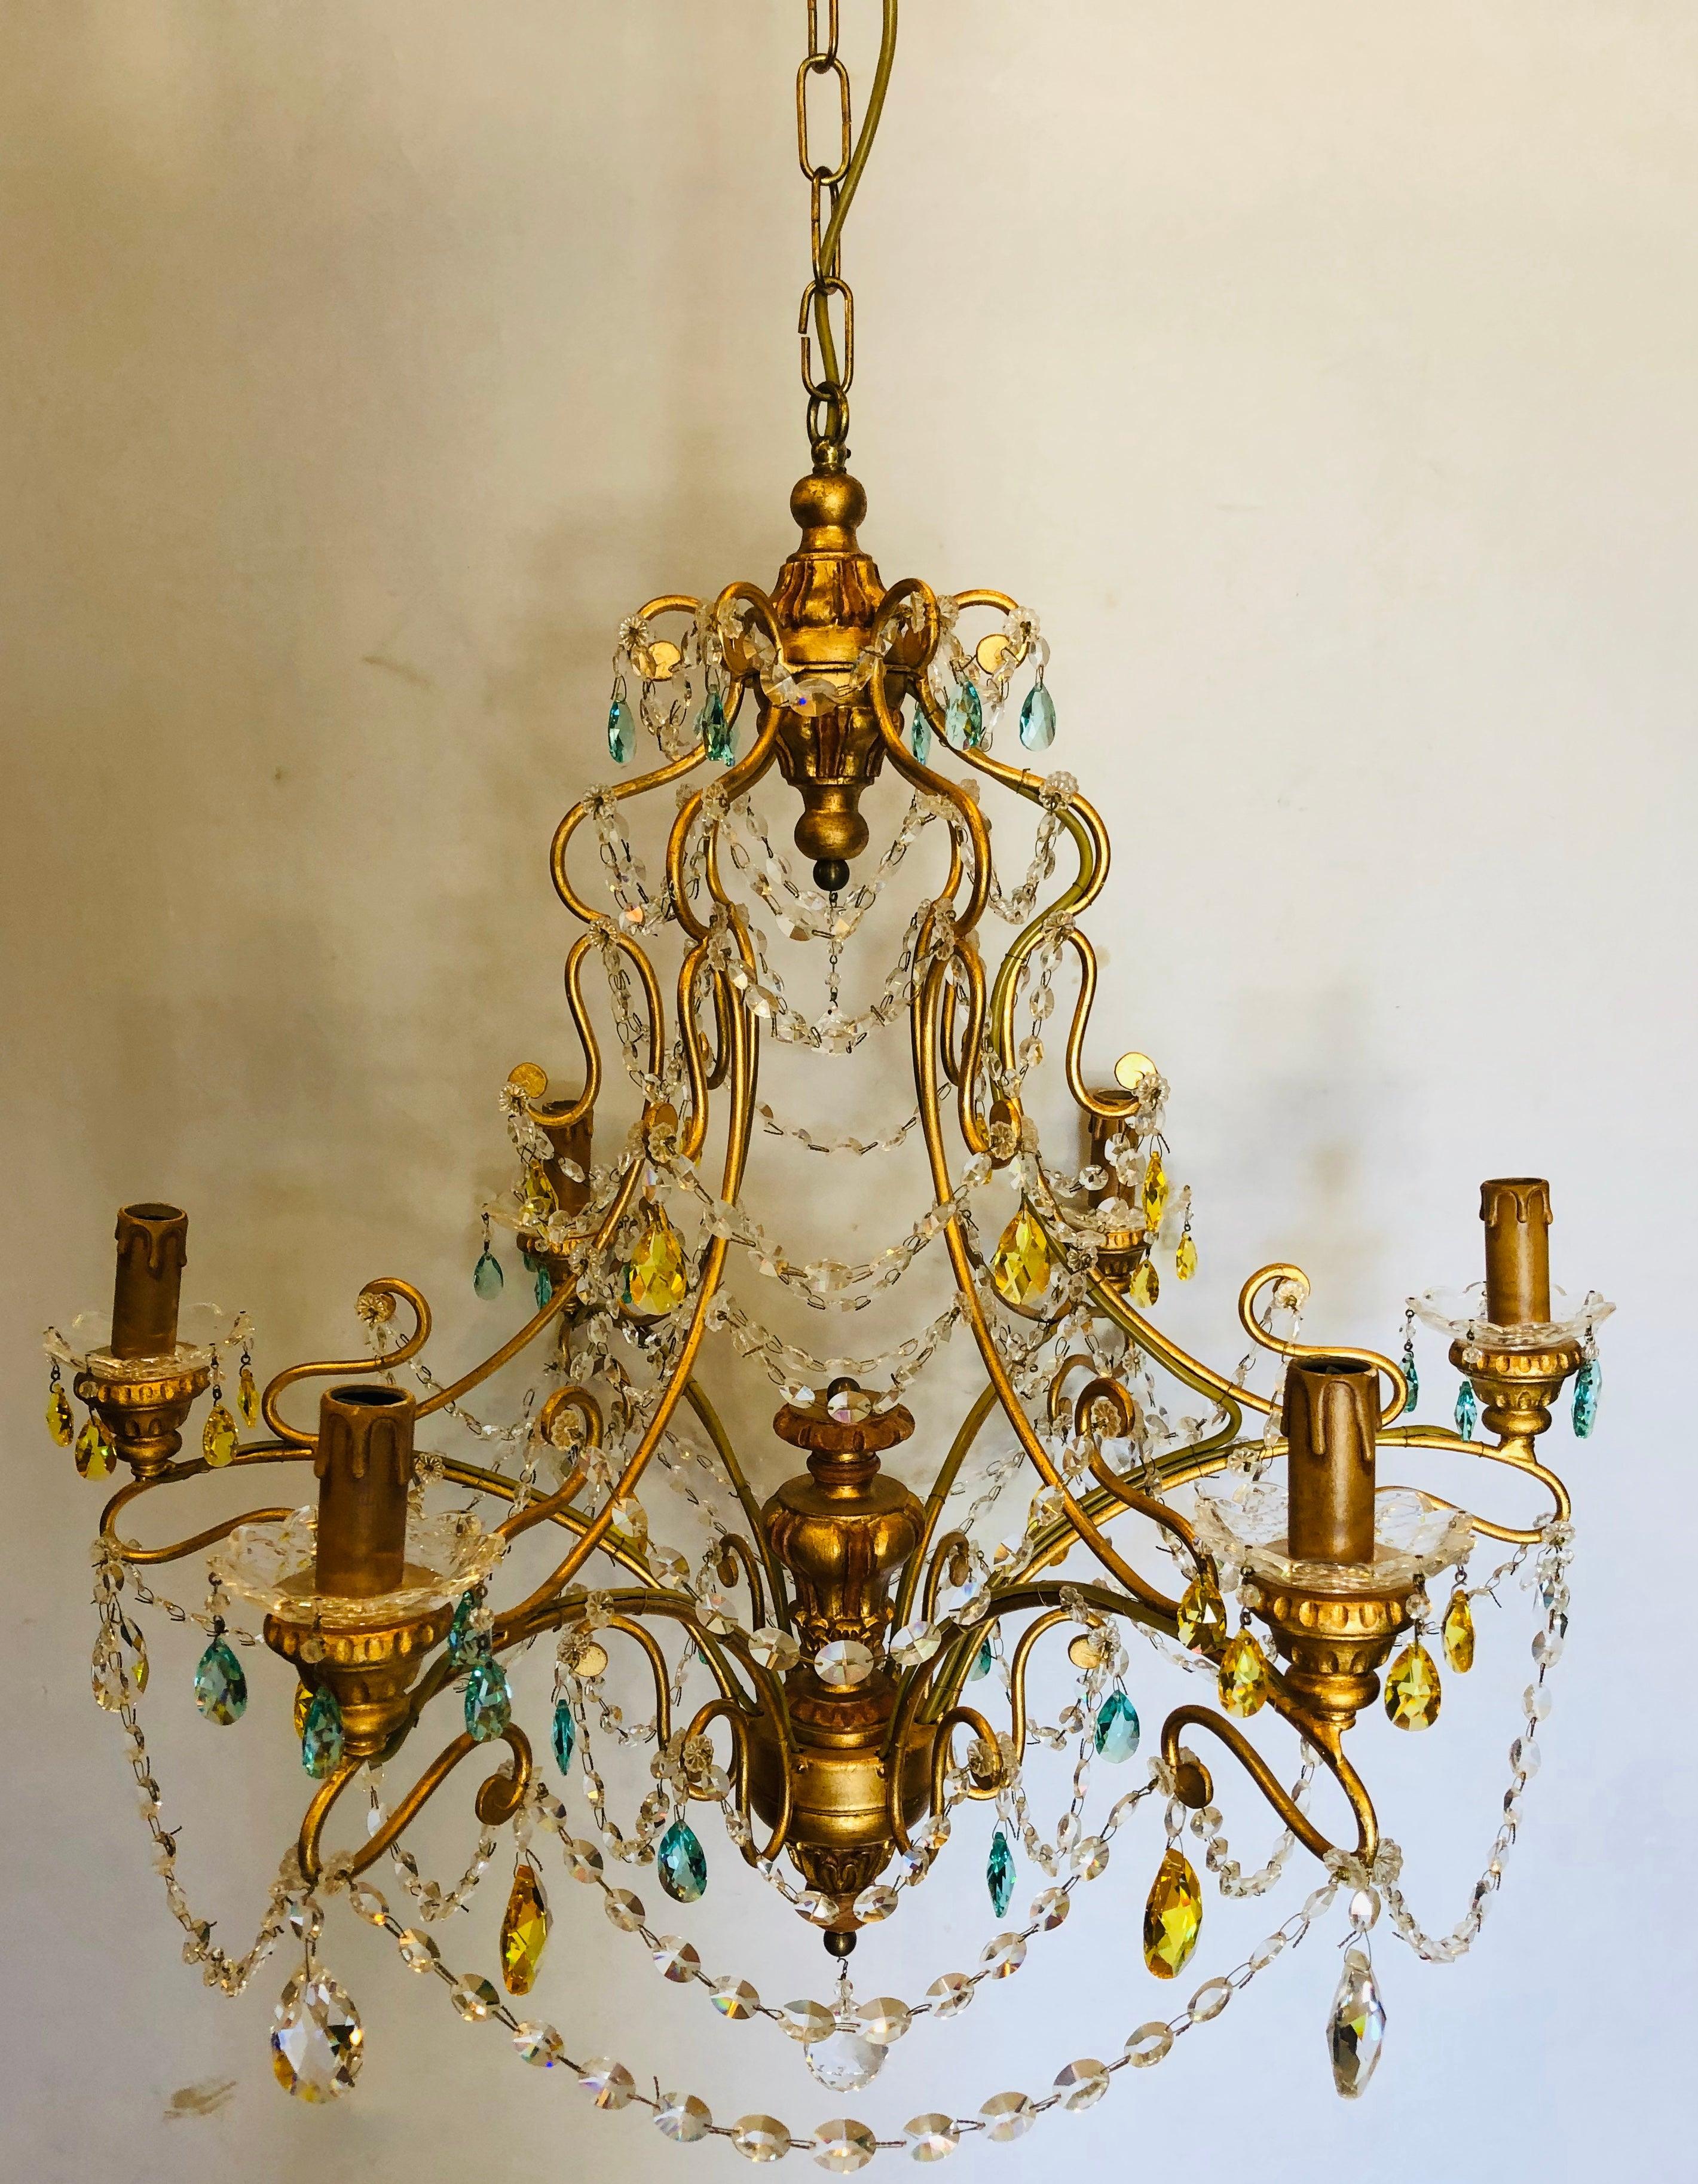 Neoklassischer, handgefertigter italienischer Kronleuchter aus vergoldetem Metall und Kristall. Dieser elegante und stilvolle Kronleuchter aus Muranokristall erinnert an die Kunstfertigkeit, die Alba Lighting zu einem bekannten Namen in der